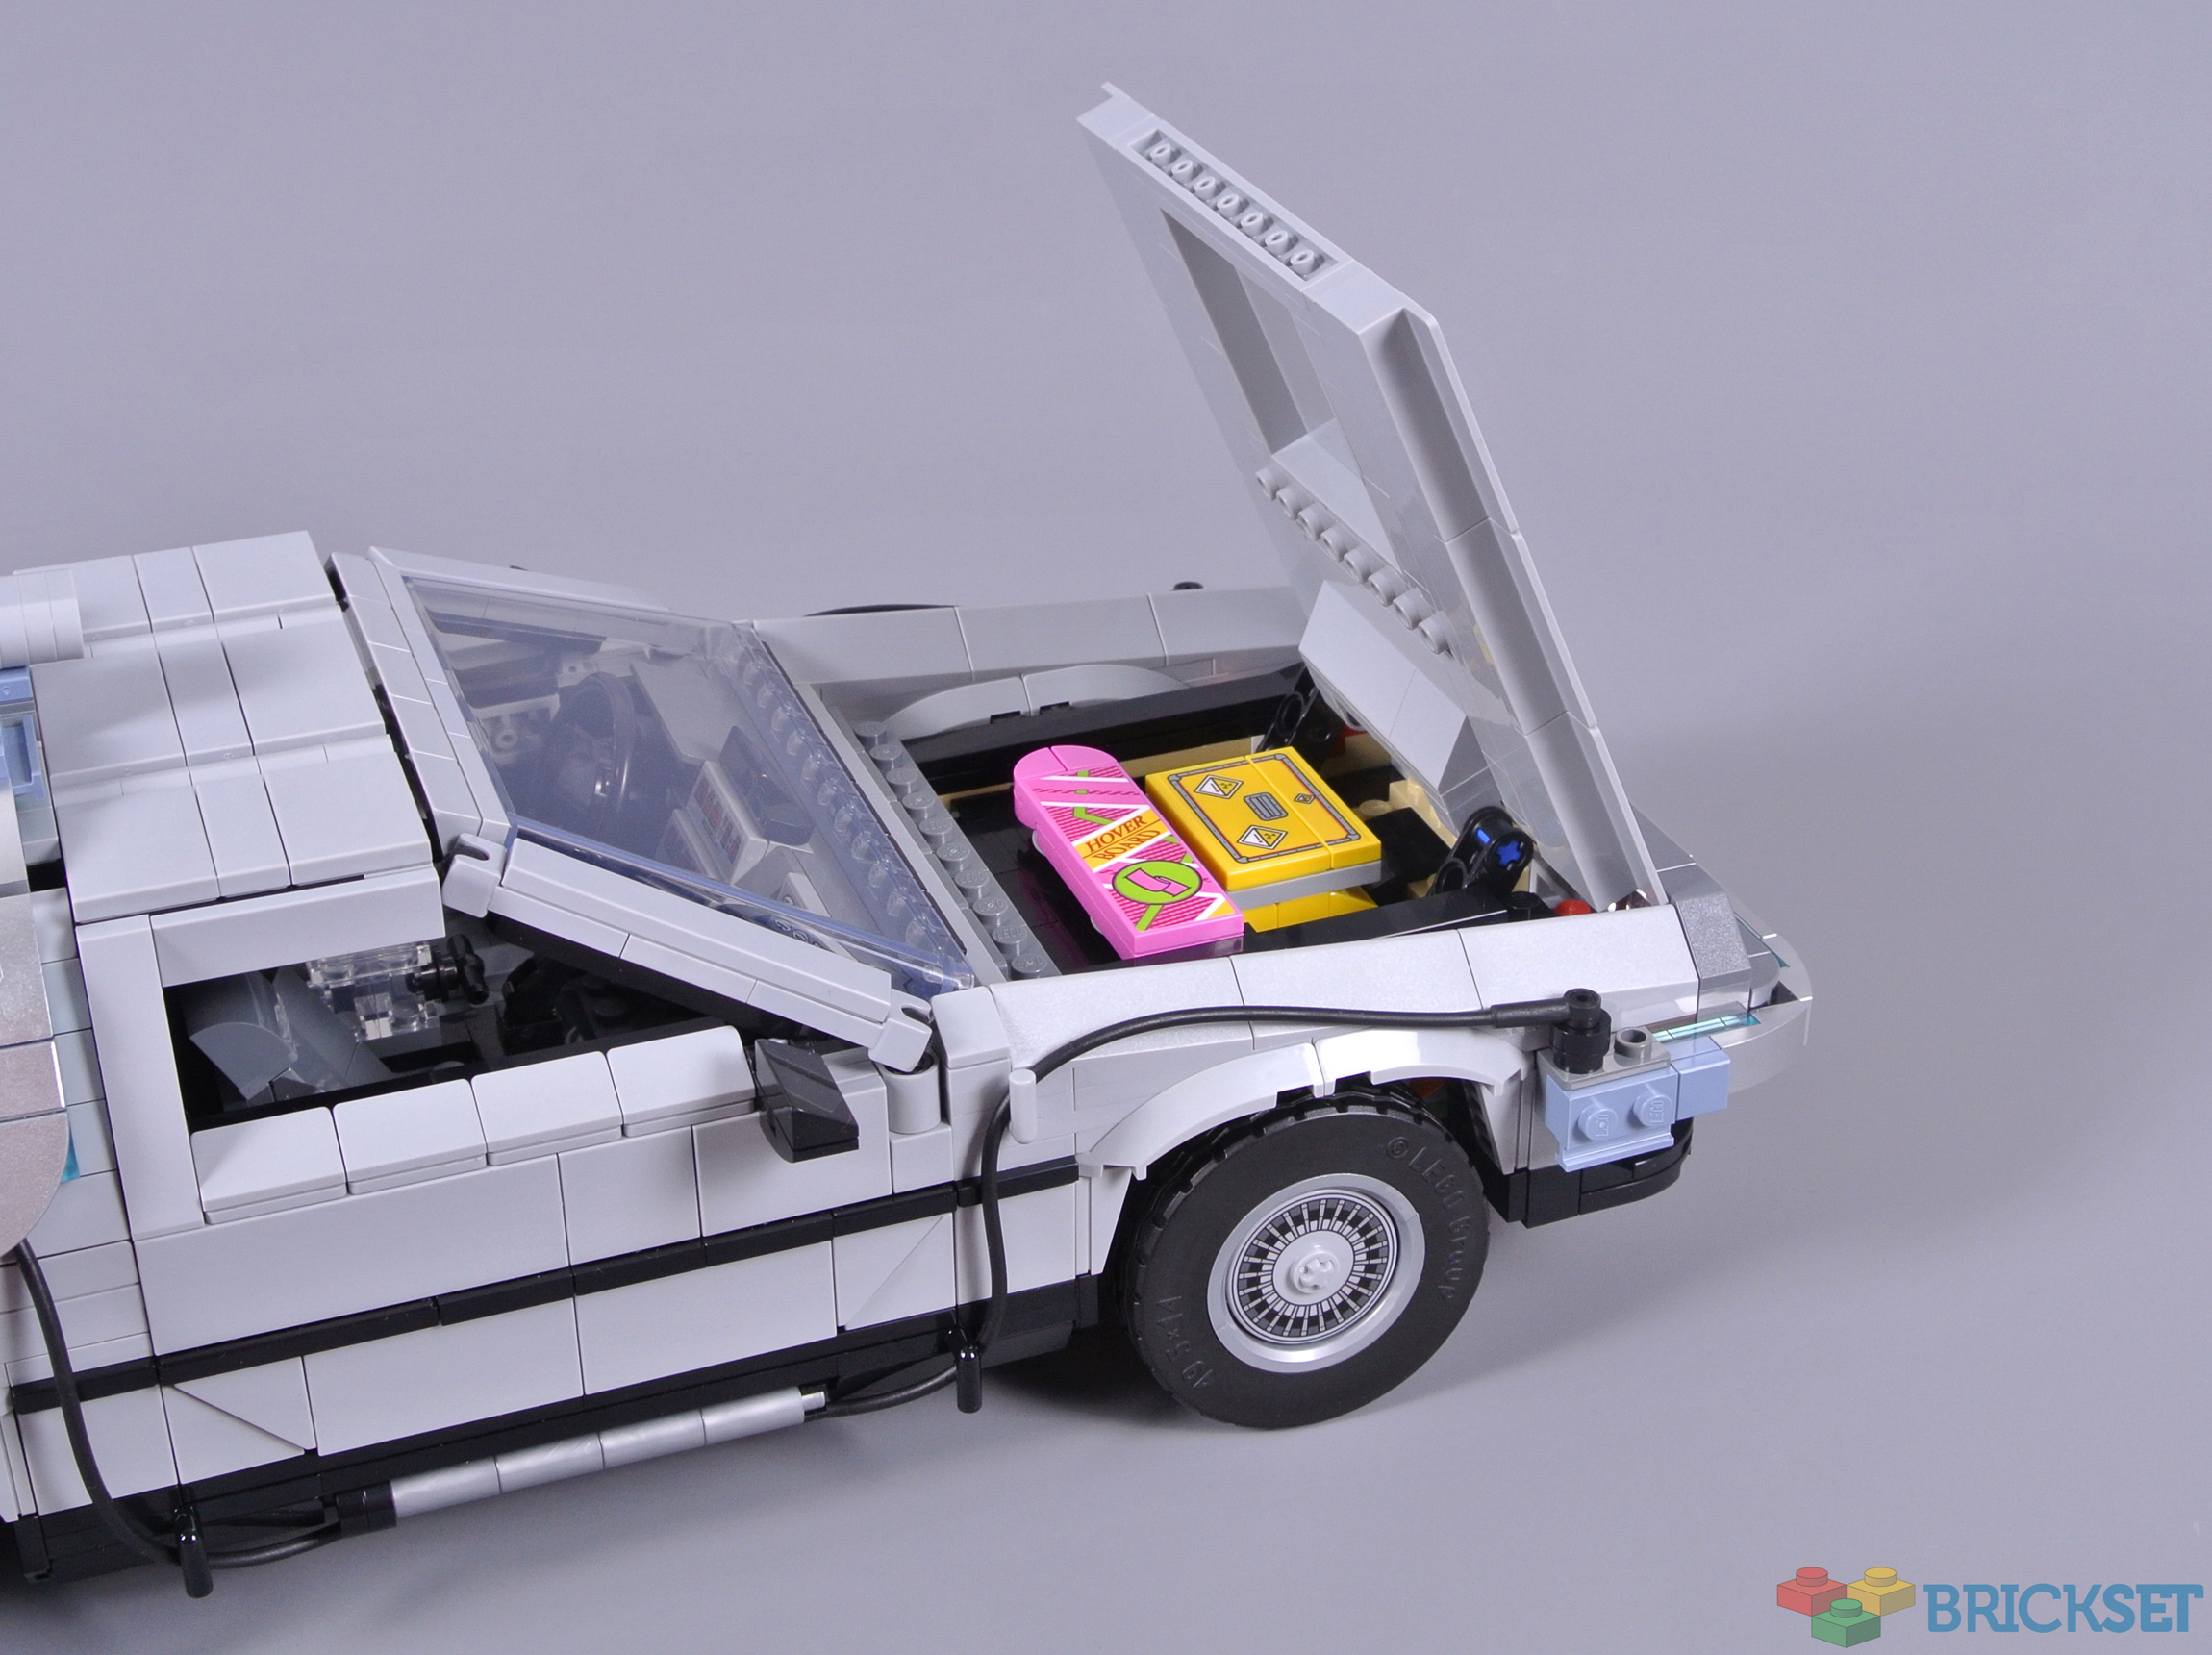 Review LEGO 10300 Back to the Future Time Machine : la DeLorean de